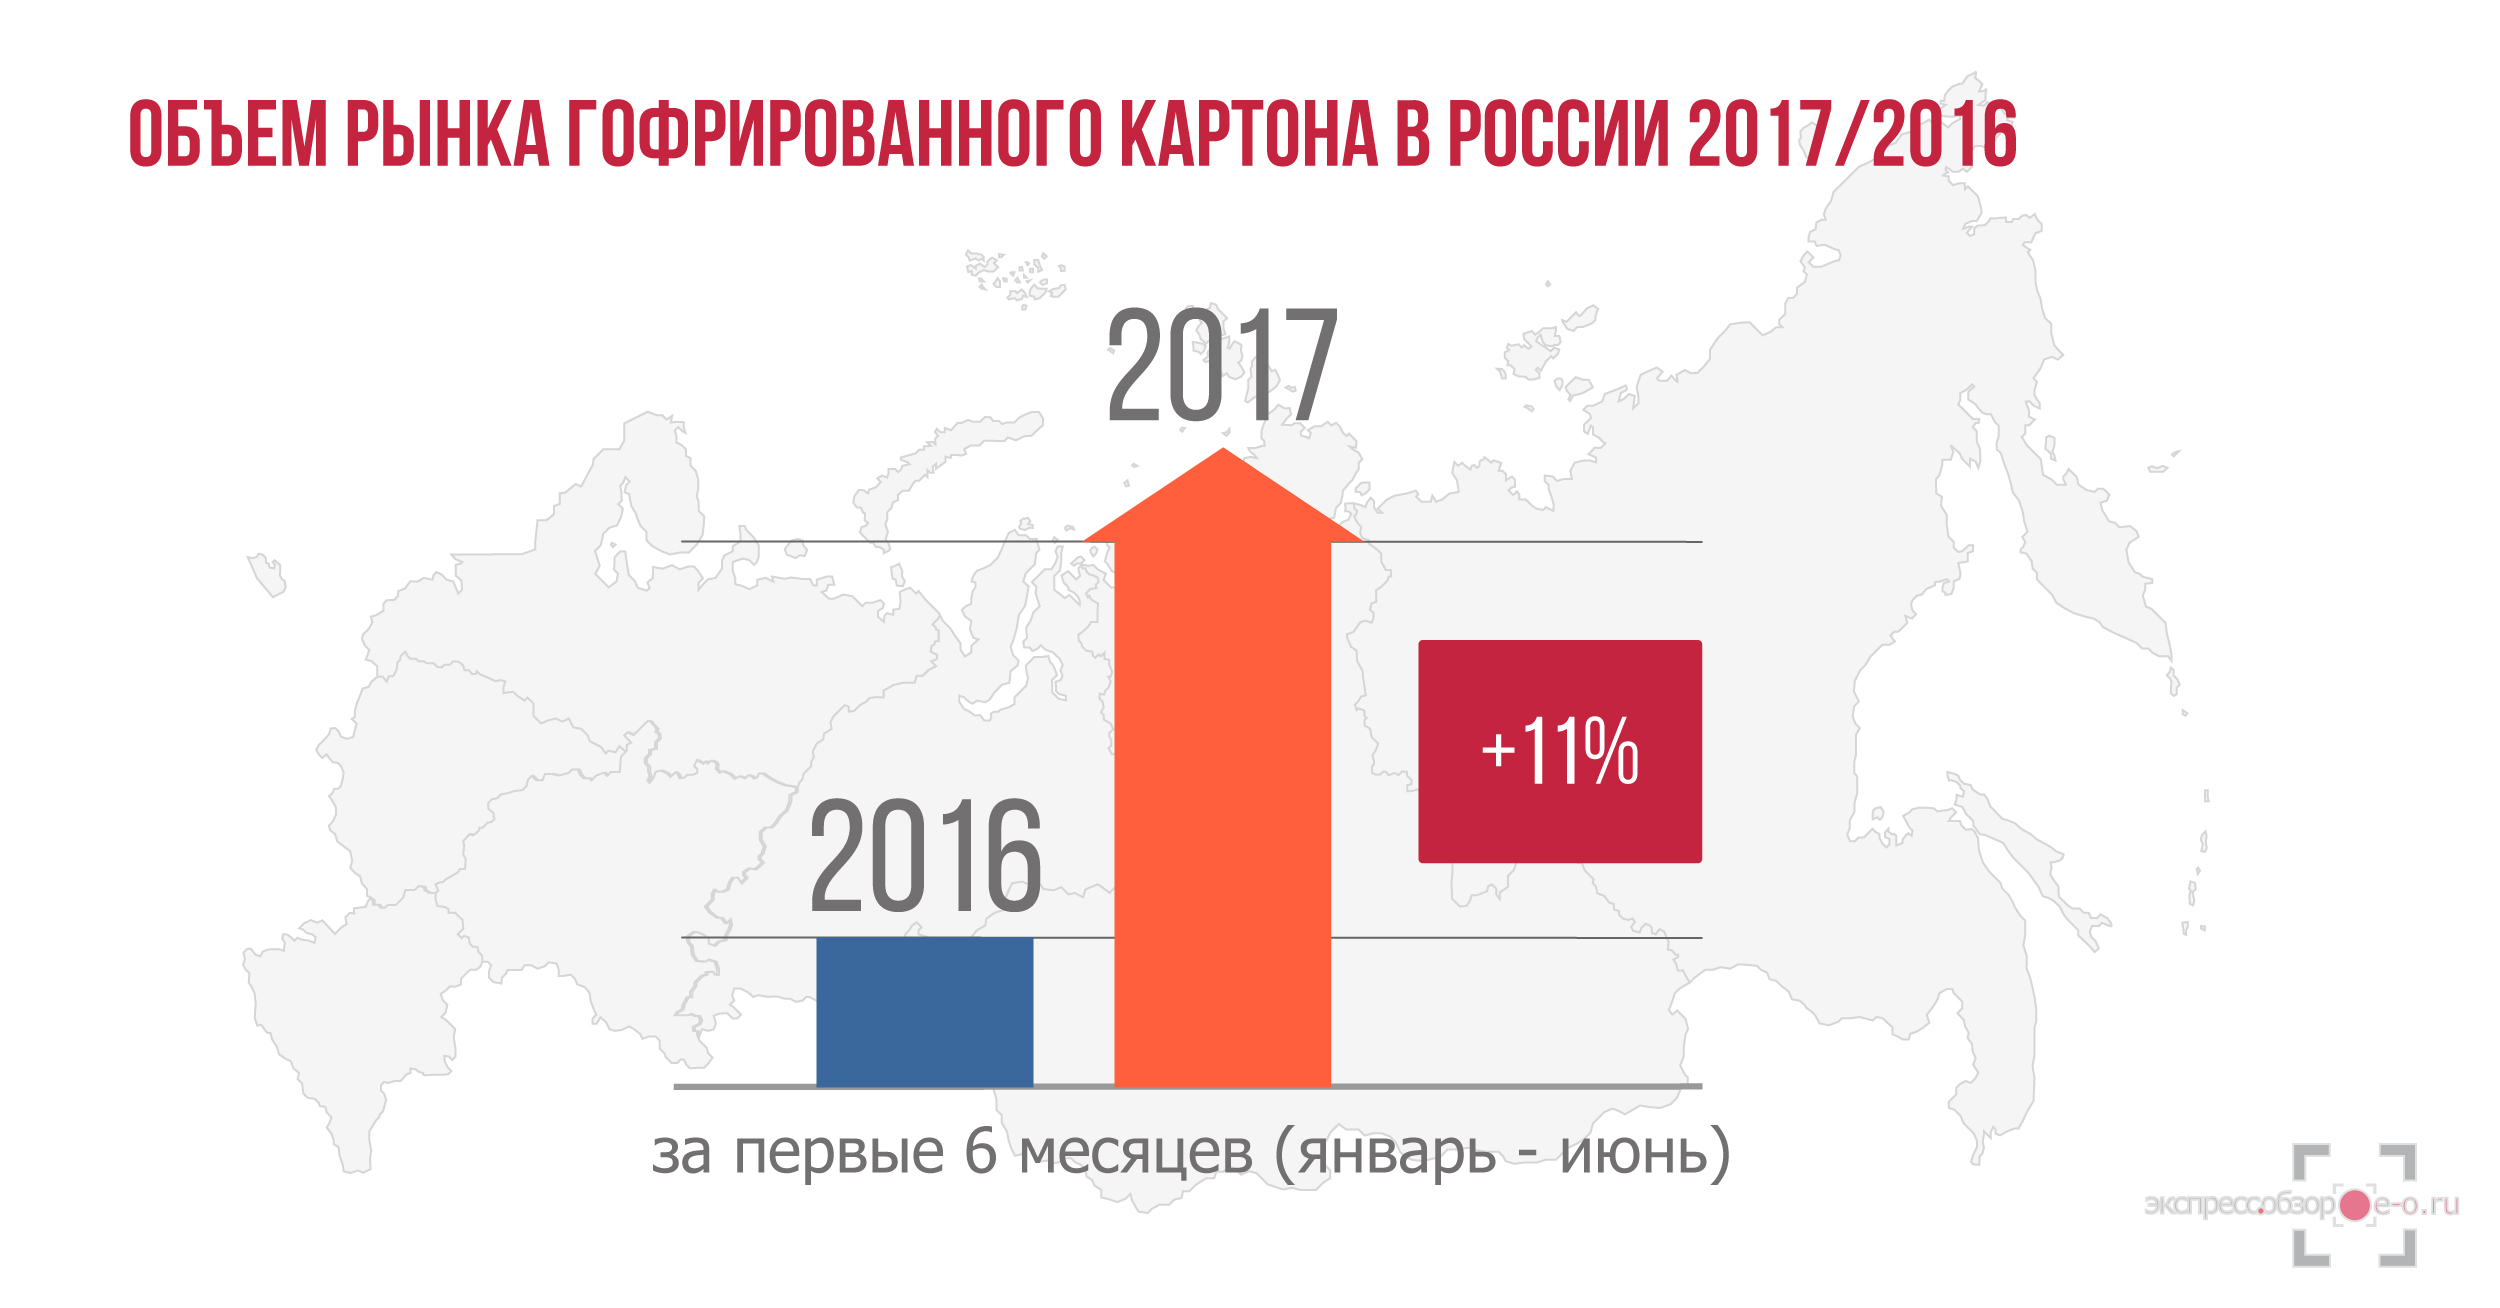 Рынок гофрированного картона в России в 2016 году